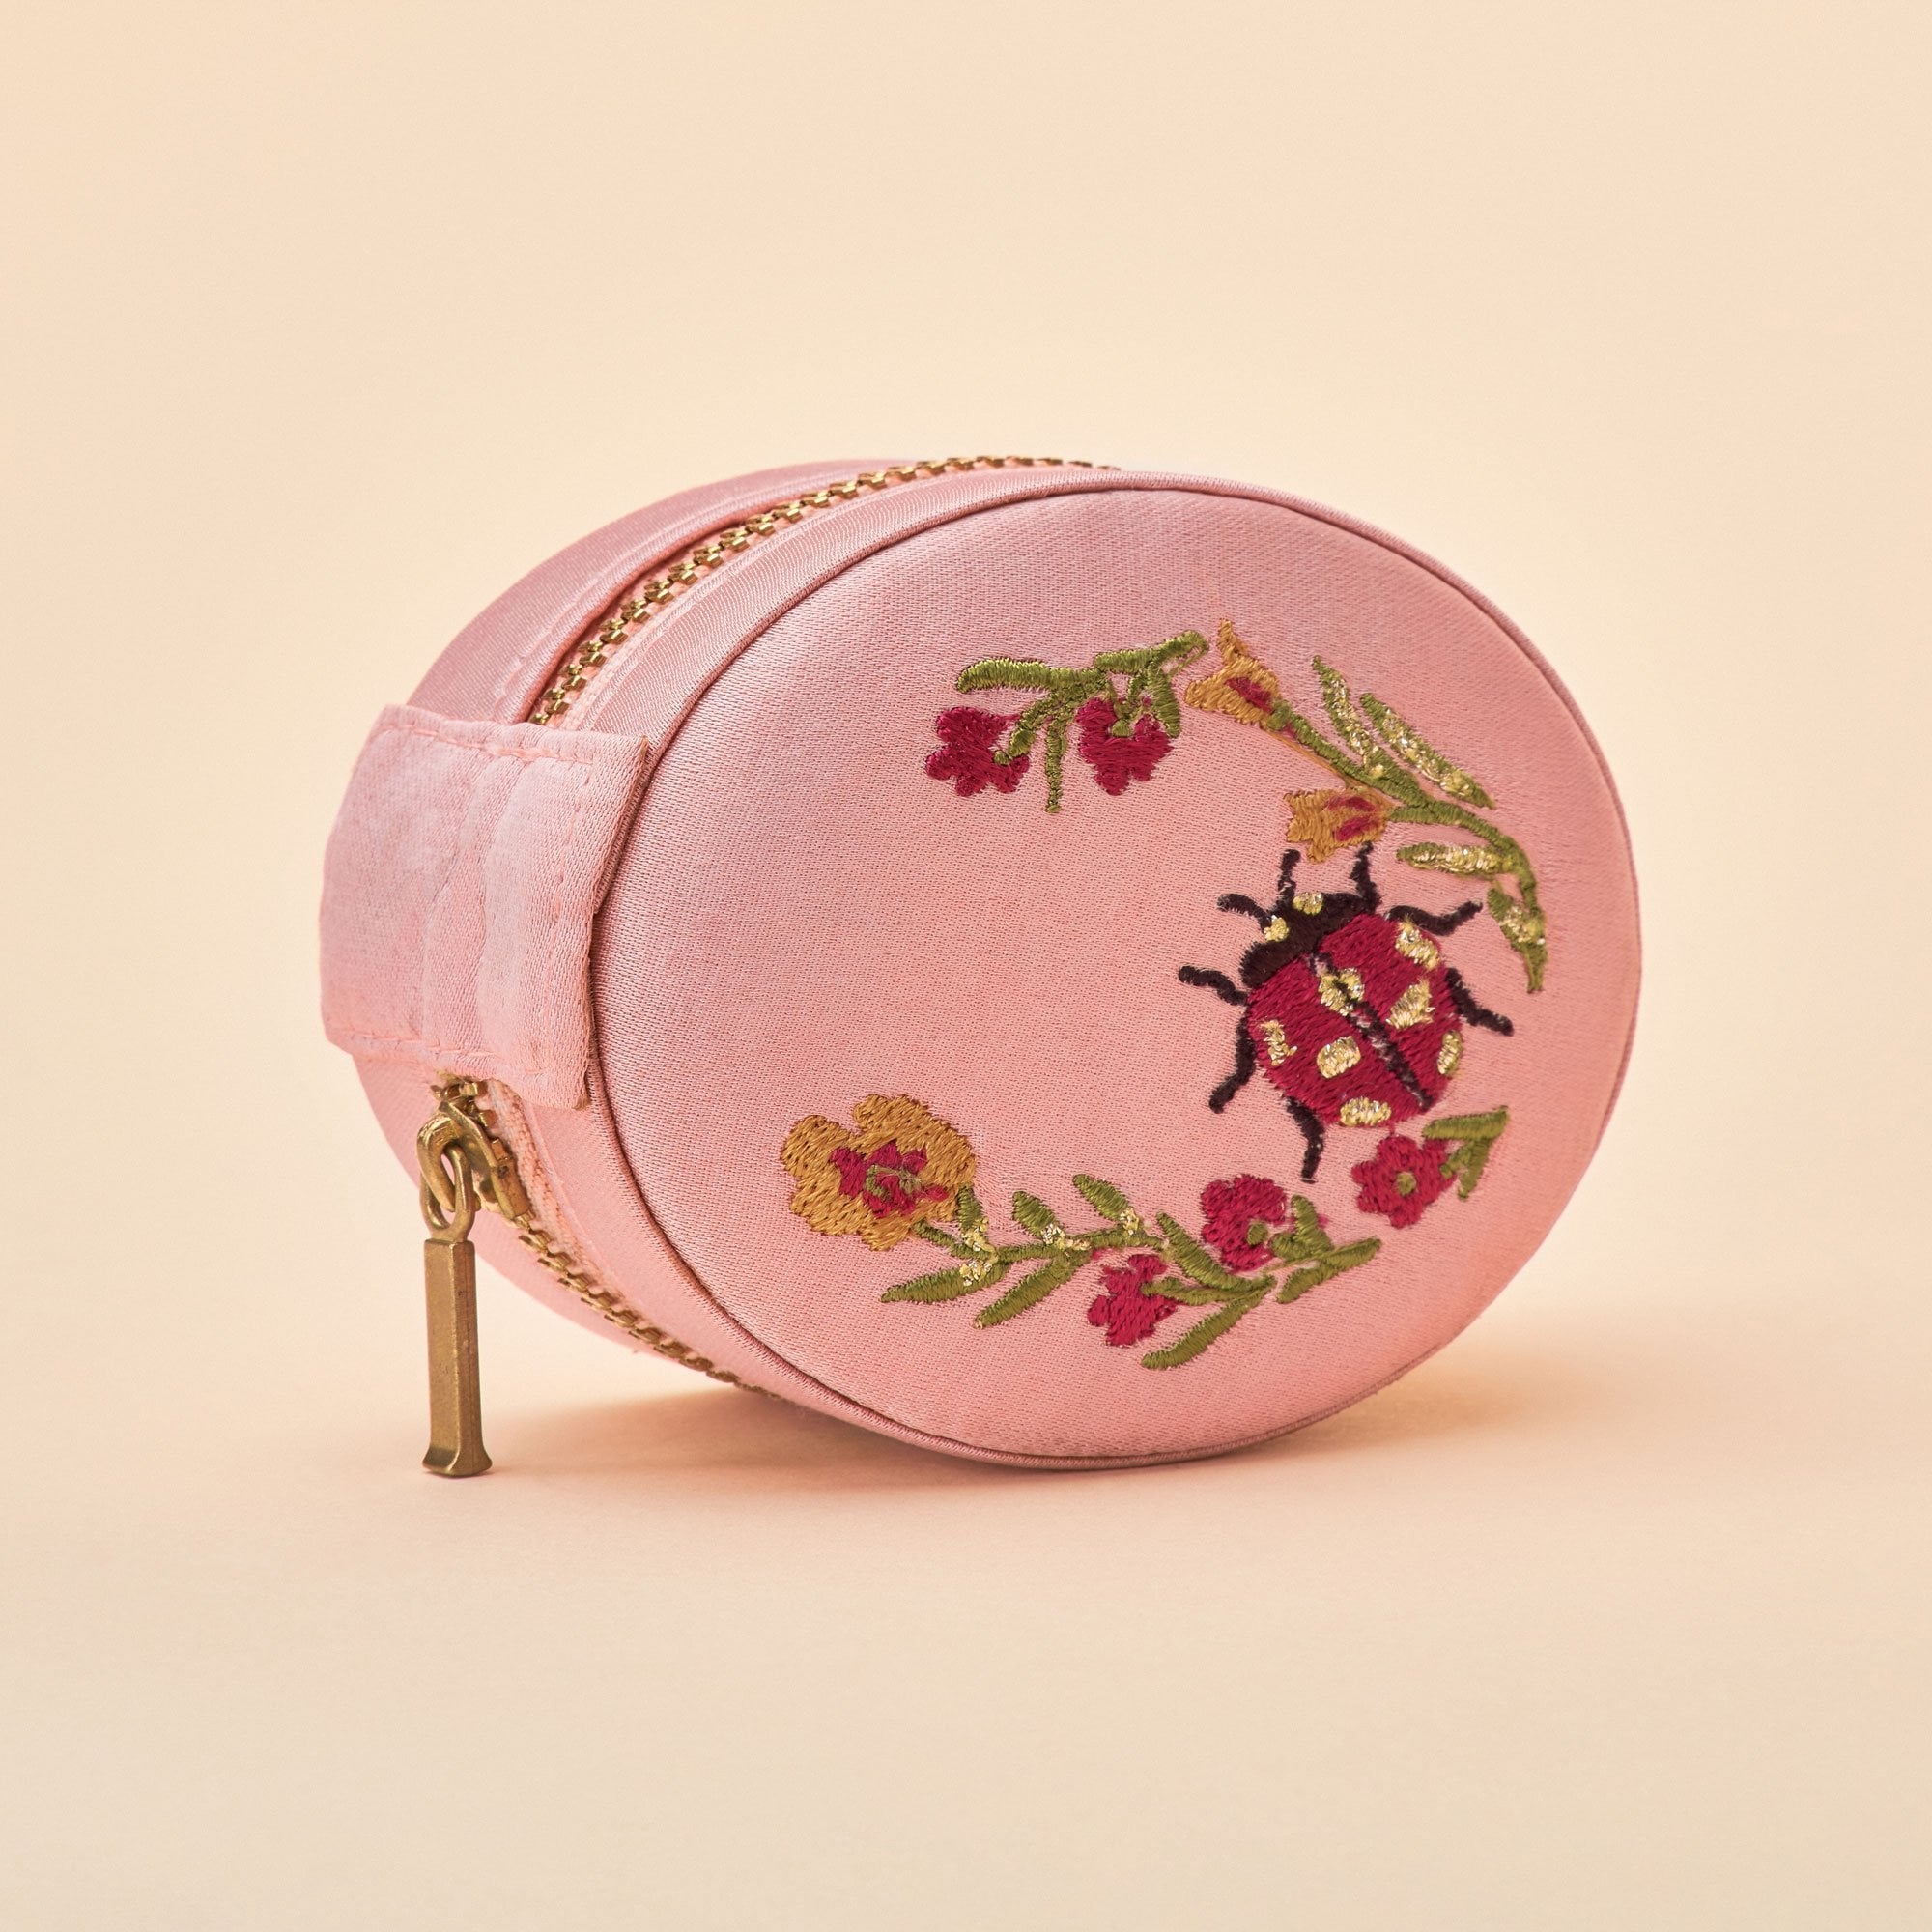 Ladybird Jewelry Box - Rose